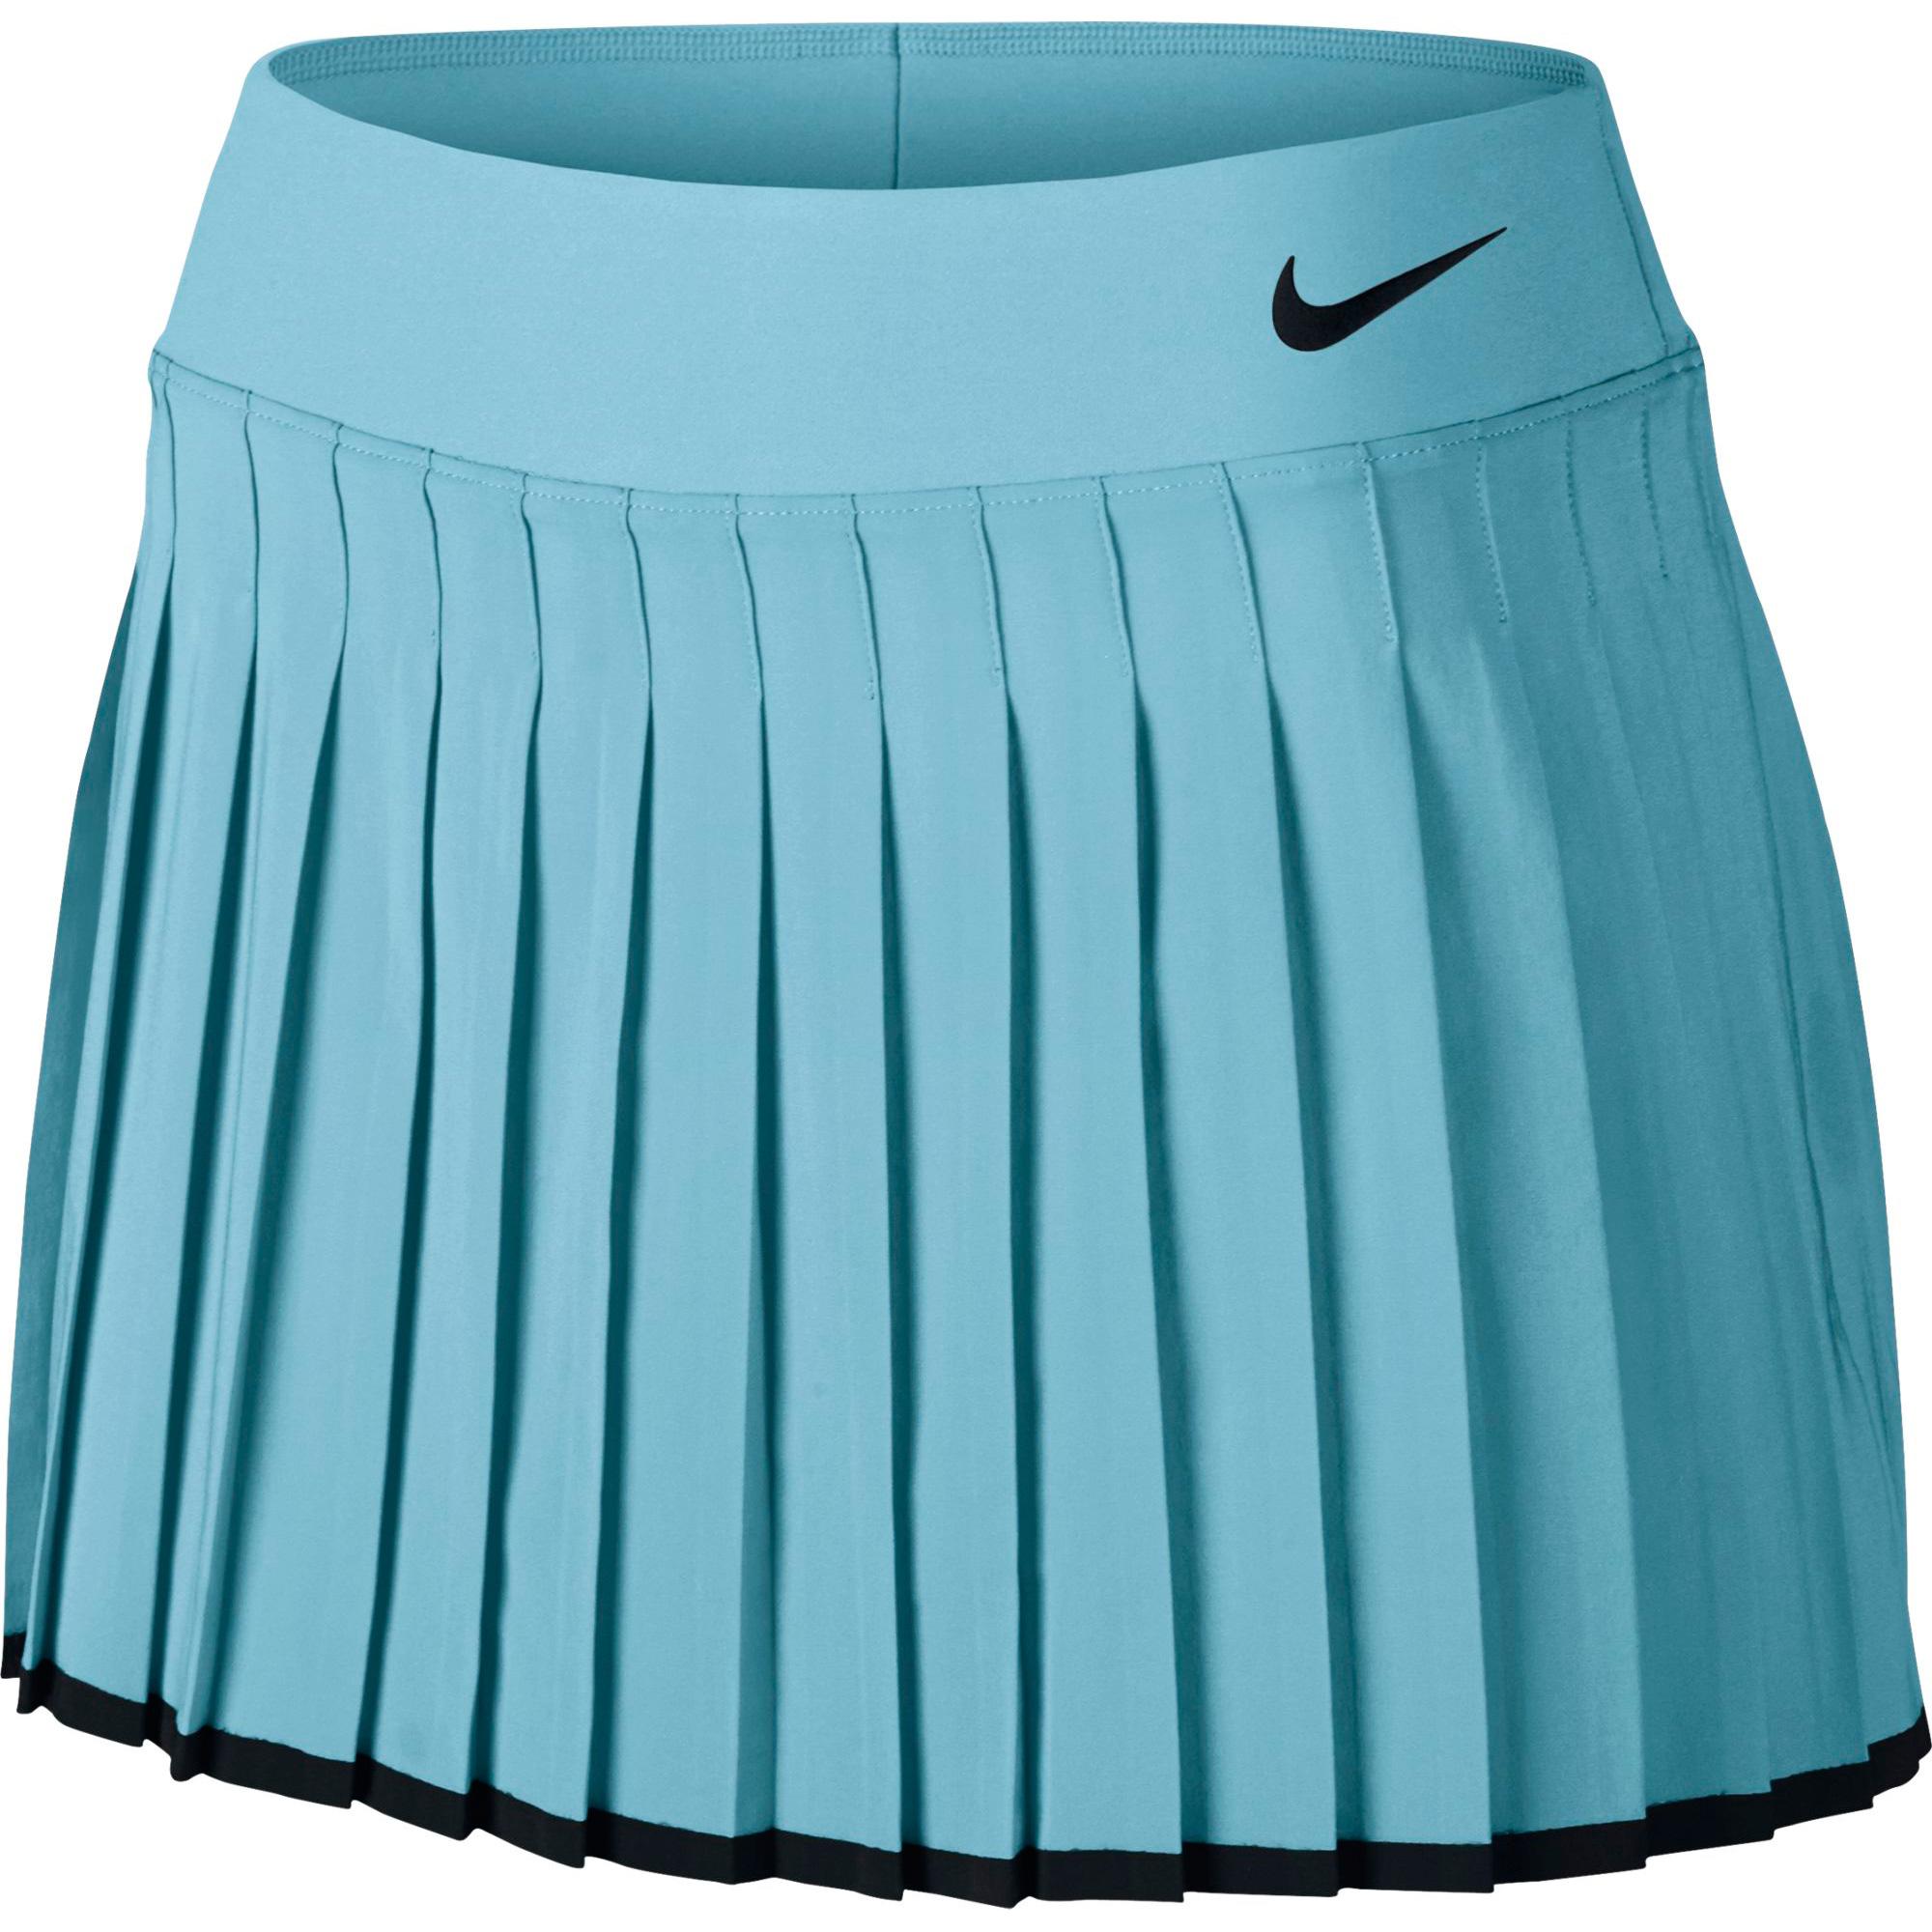 Купить юбку женскую авито. Теннисная юбка найк плиссированная. Теннисная юбка Шеин. Теннисная юбка Nike. Теннисная юбка плиссе Lacoste.